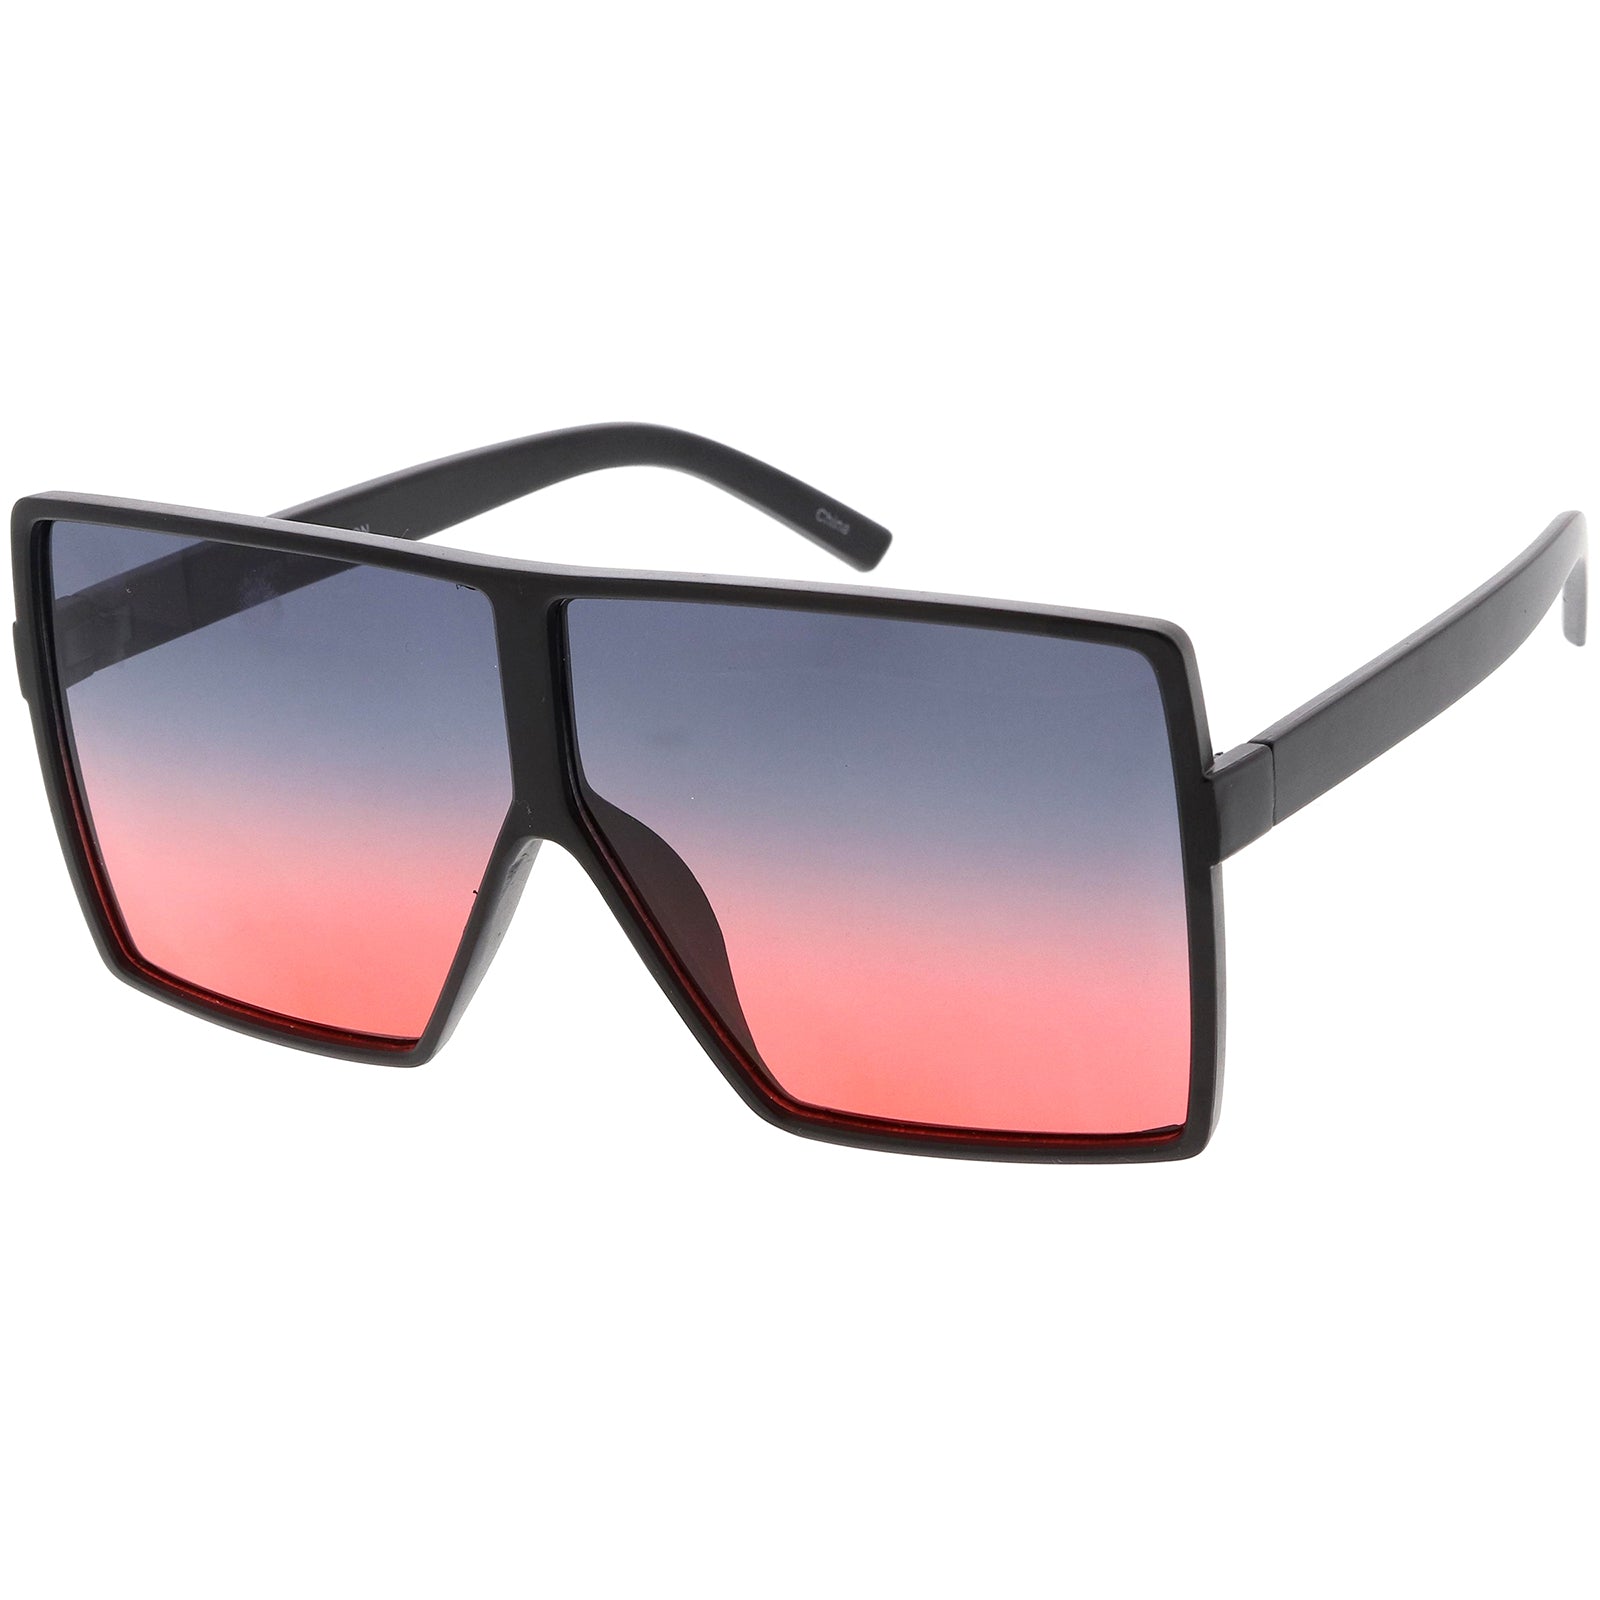 Buy Urban Lens Round, Aviator Sunglasses Blue, Golden For Men & Women  Online @ Best Prices in India | Flipkart.com